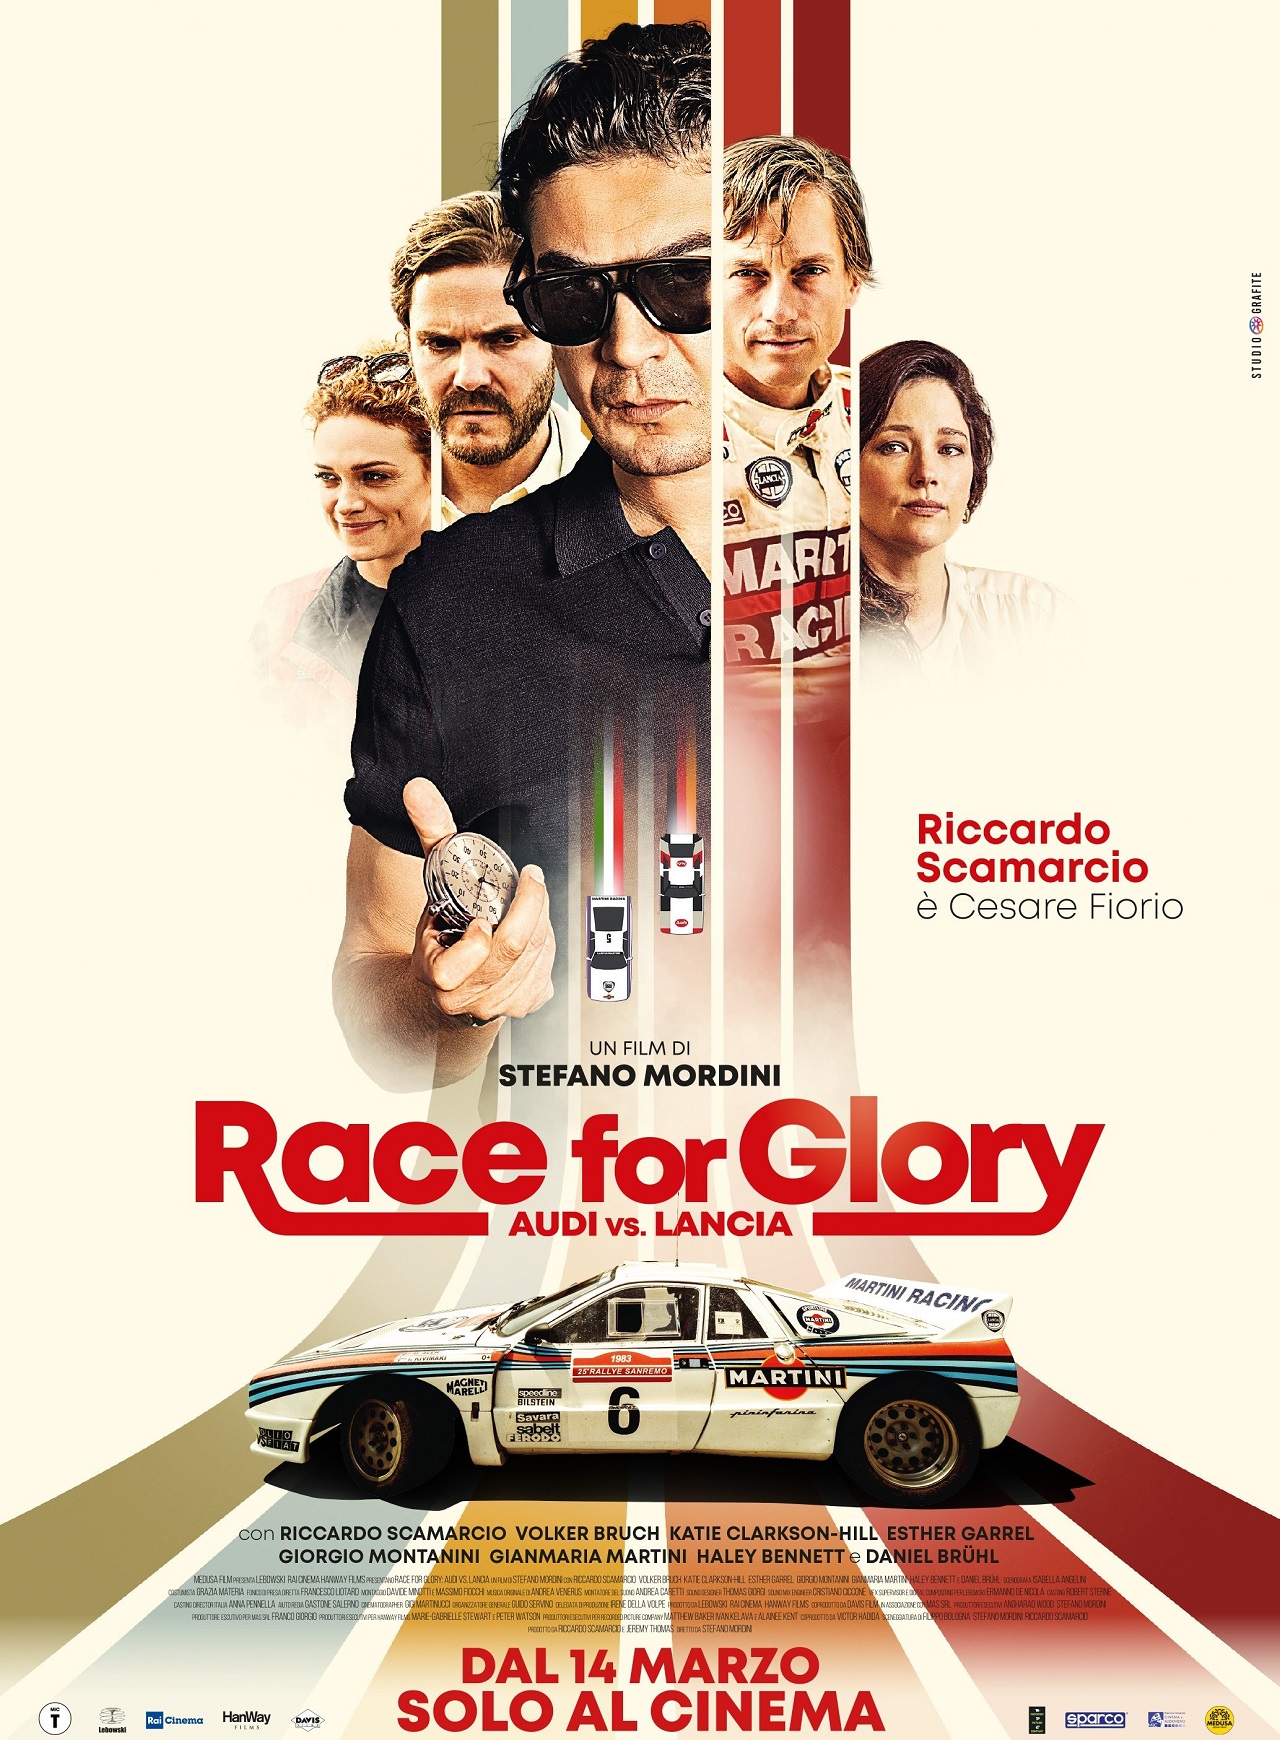 il film race for glory – audi vs lancia arriverà nelle sale italiane dal 14 marzo